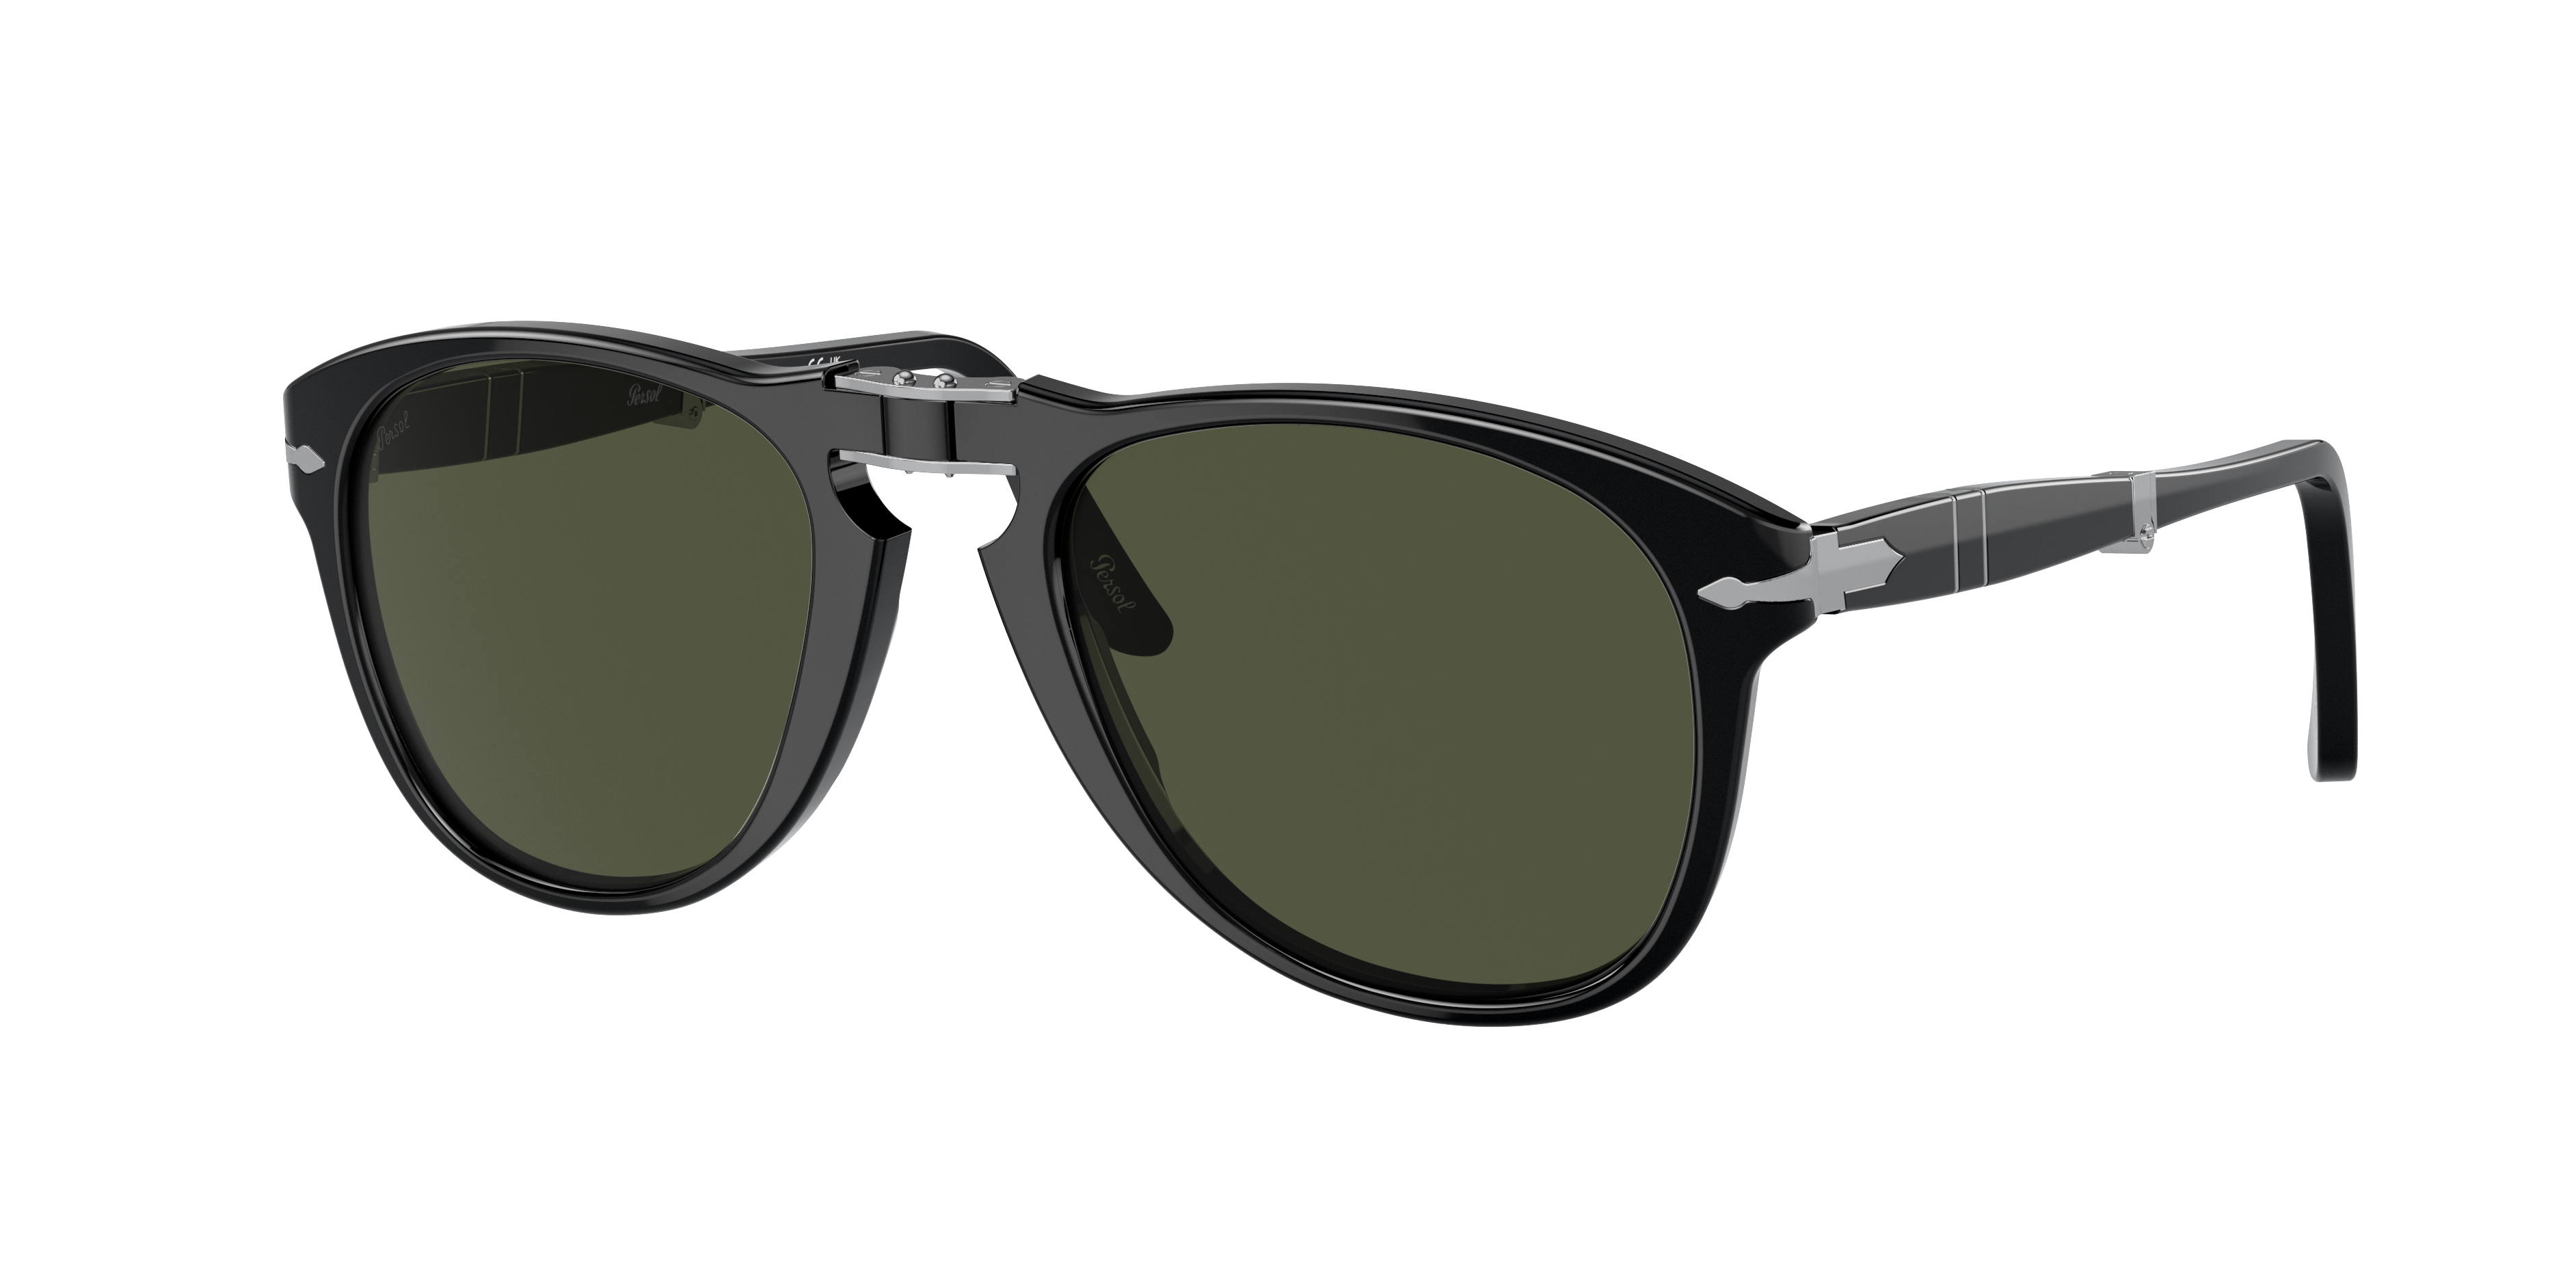 Persol 714 - Original Sunglasses in Black | Persol® Persol USA